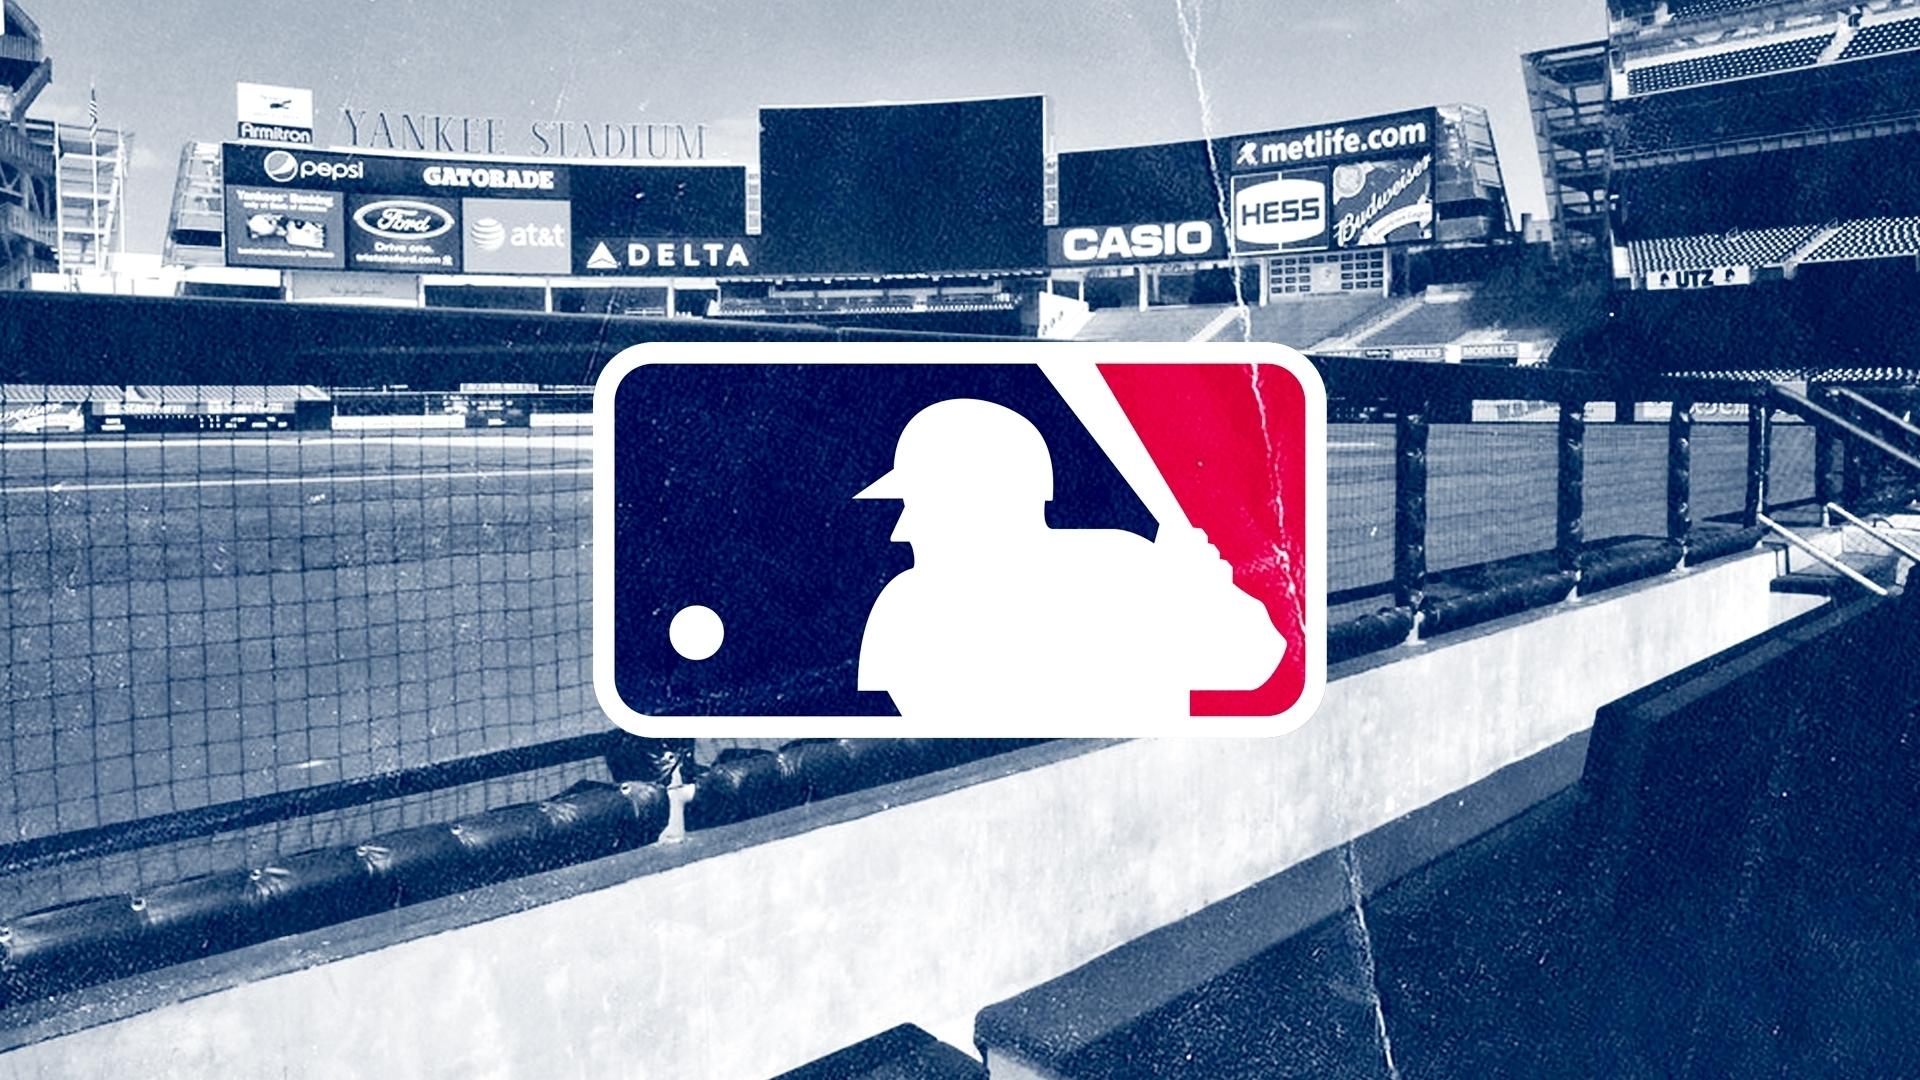 MLB / SNY Treated Image